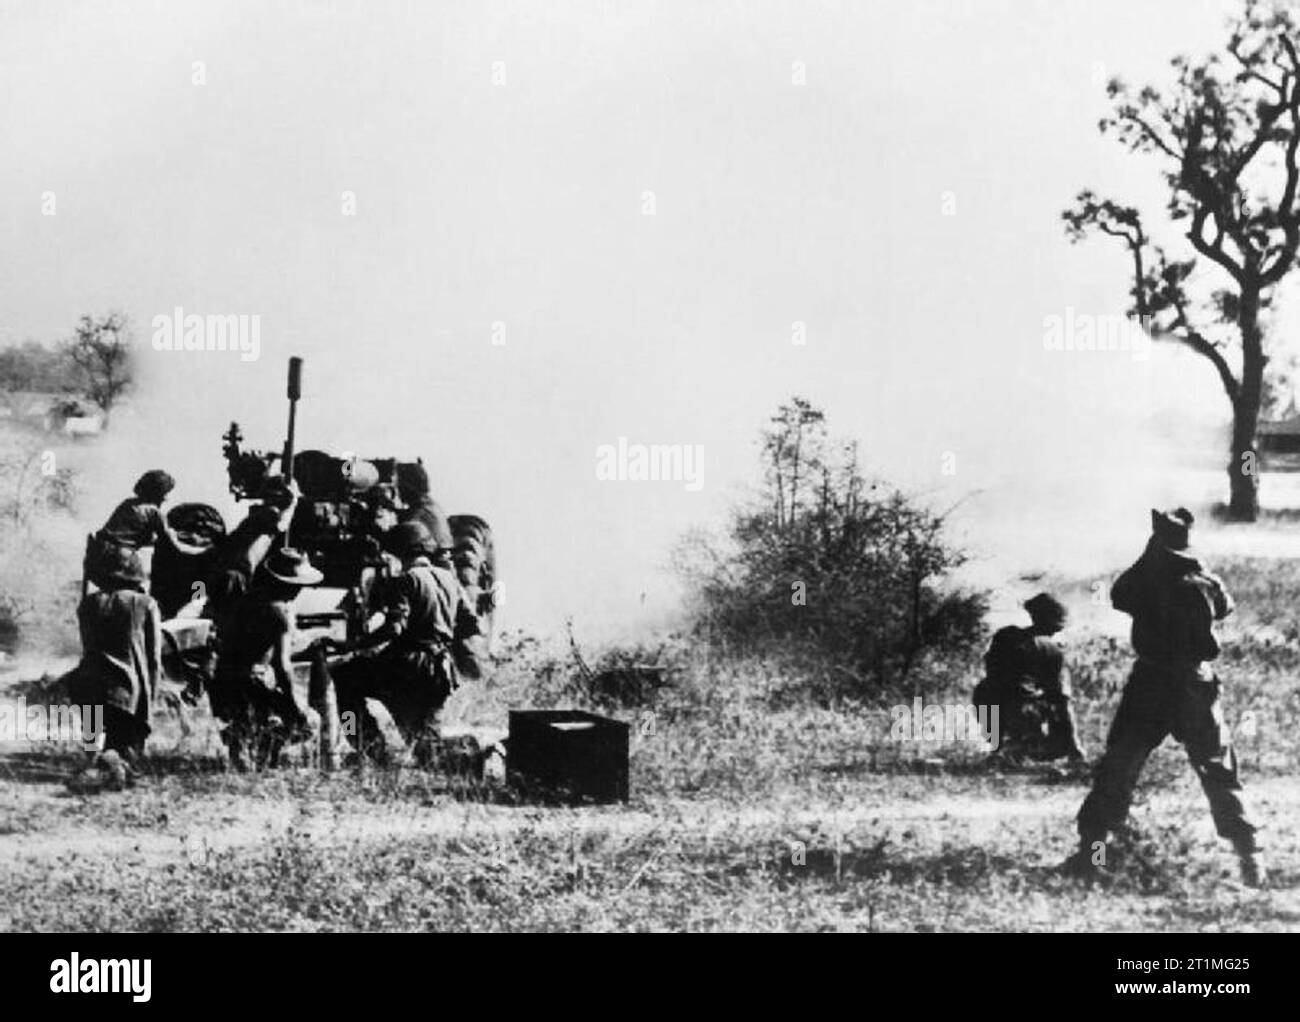 Der Krieg im Fernen Osten - der Burma Campaign 1941-1945 Die Kampagne in Mandalay Februar - März 1945: Britische Artillerie bombardiert Fort Dufferin, der Schlüssel für die Japanische Abwehr in Mandalay. Stockfoto